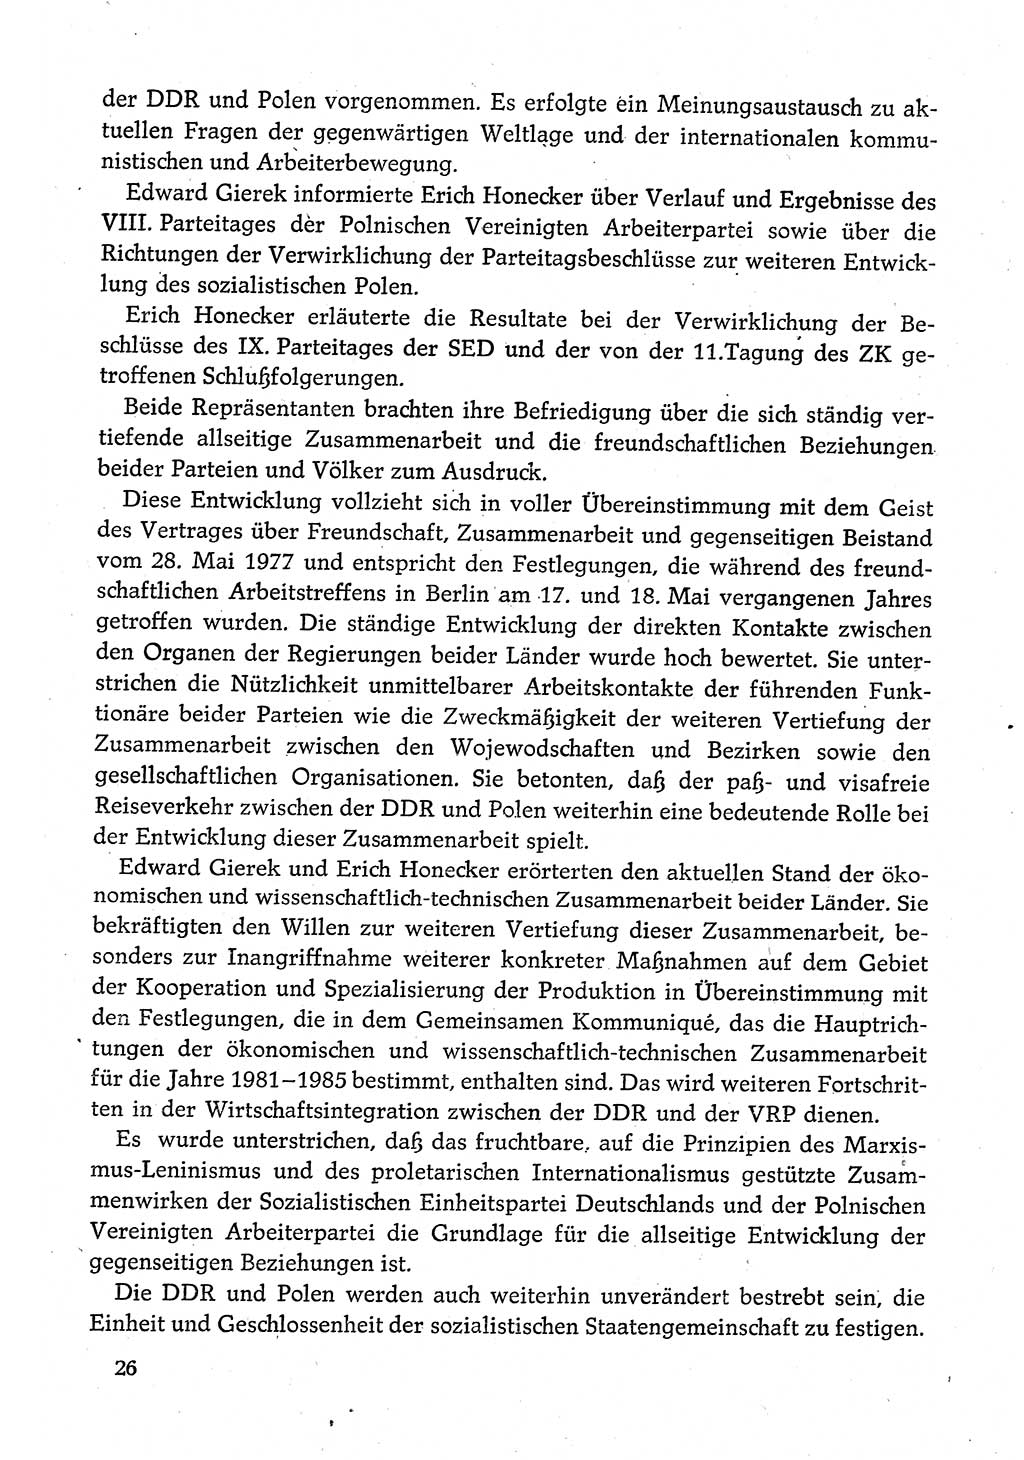 Dokumente der Sozialistischen Einheitspartei Deutschlands (SED) [Deutsche Demokratische Republik (DDR)] 1980-1981, Seite 26 (Dok. SED DDR 1980-1981, S. 26)